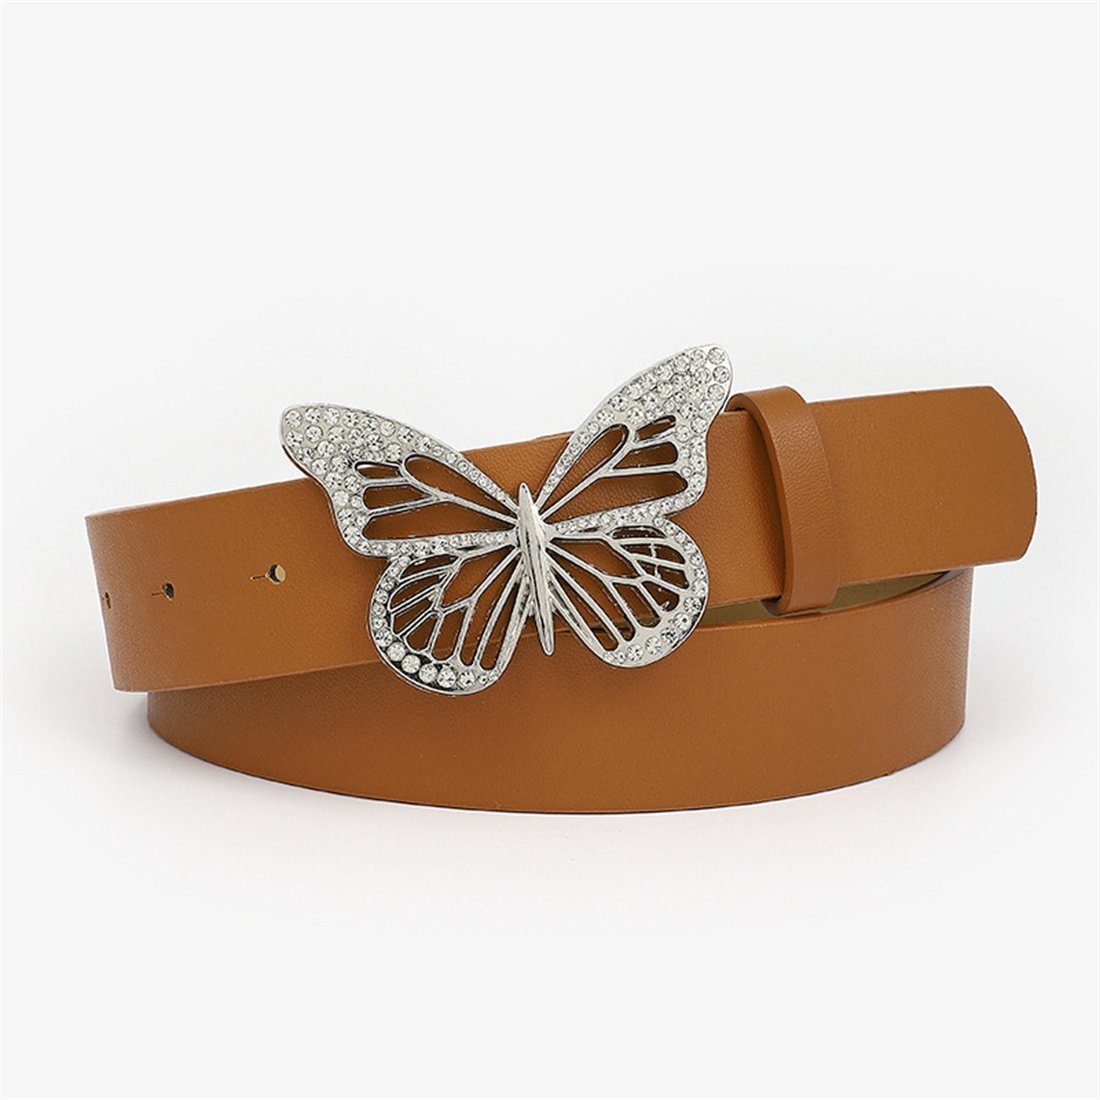 Strassgürtel Damen Braun Zubehör mit Schmetterlingsschnalle, Gürtel Ledergürtel LYDMN Mode